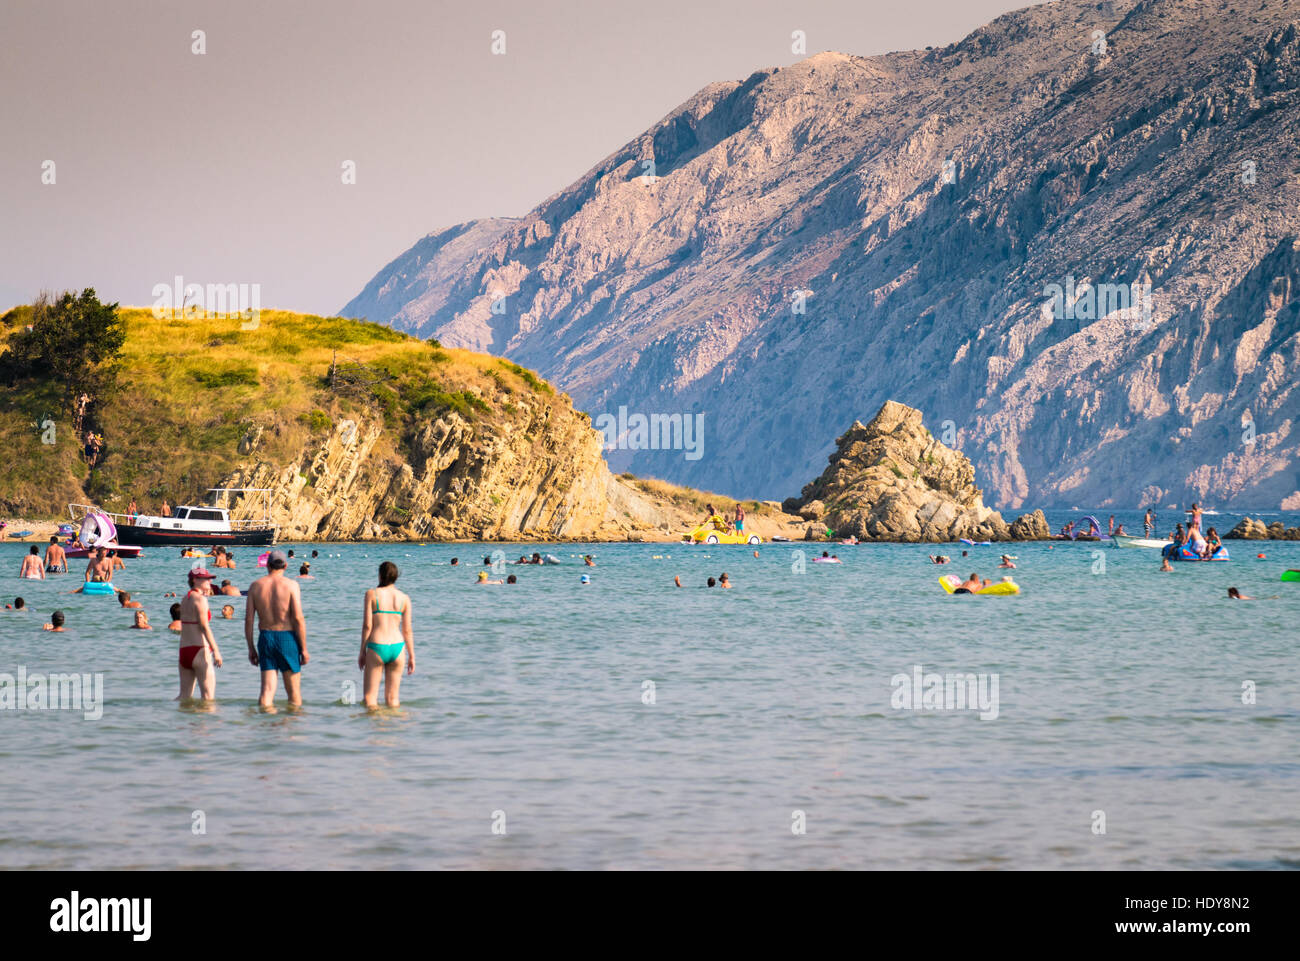 Rab, Kroatien - 5. August 2015: Die unberührte Küste und kristallklarem Wasser der Insel Rab, Kroatien. Stockfoto